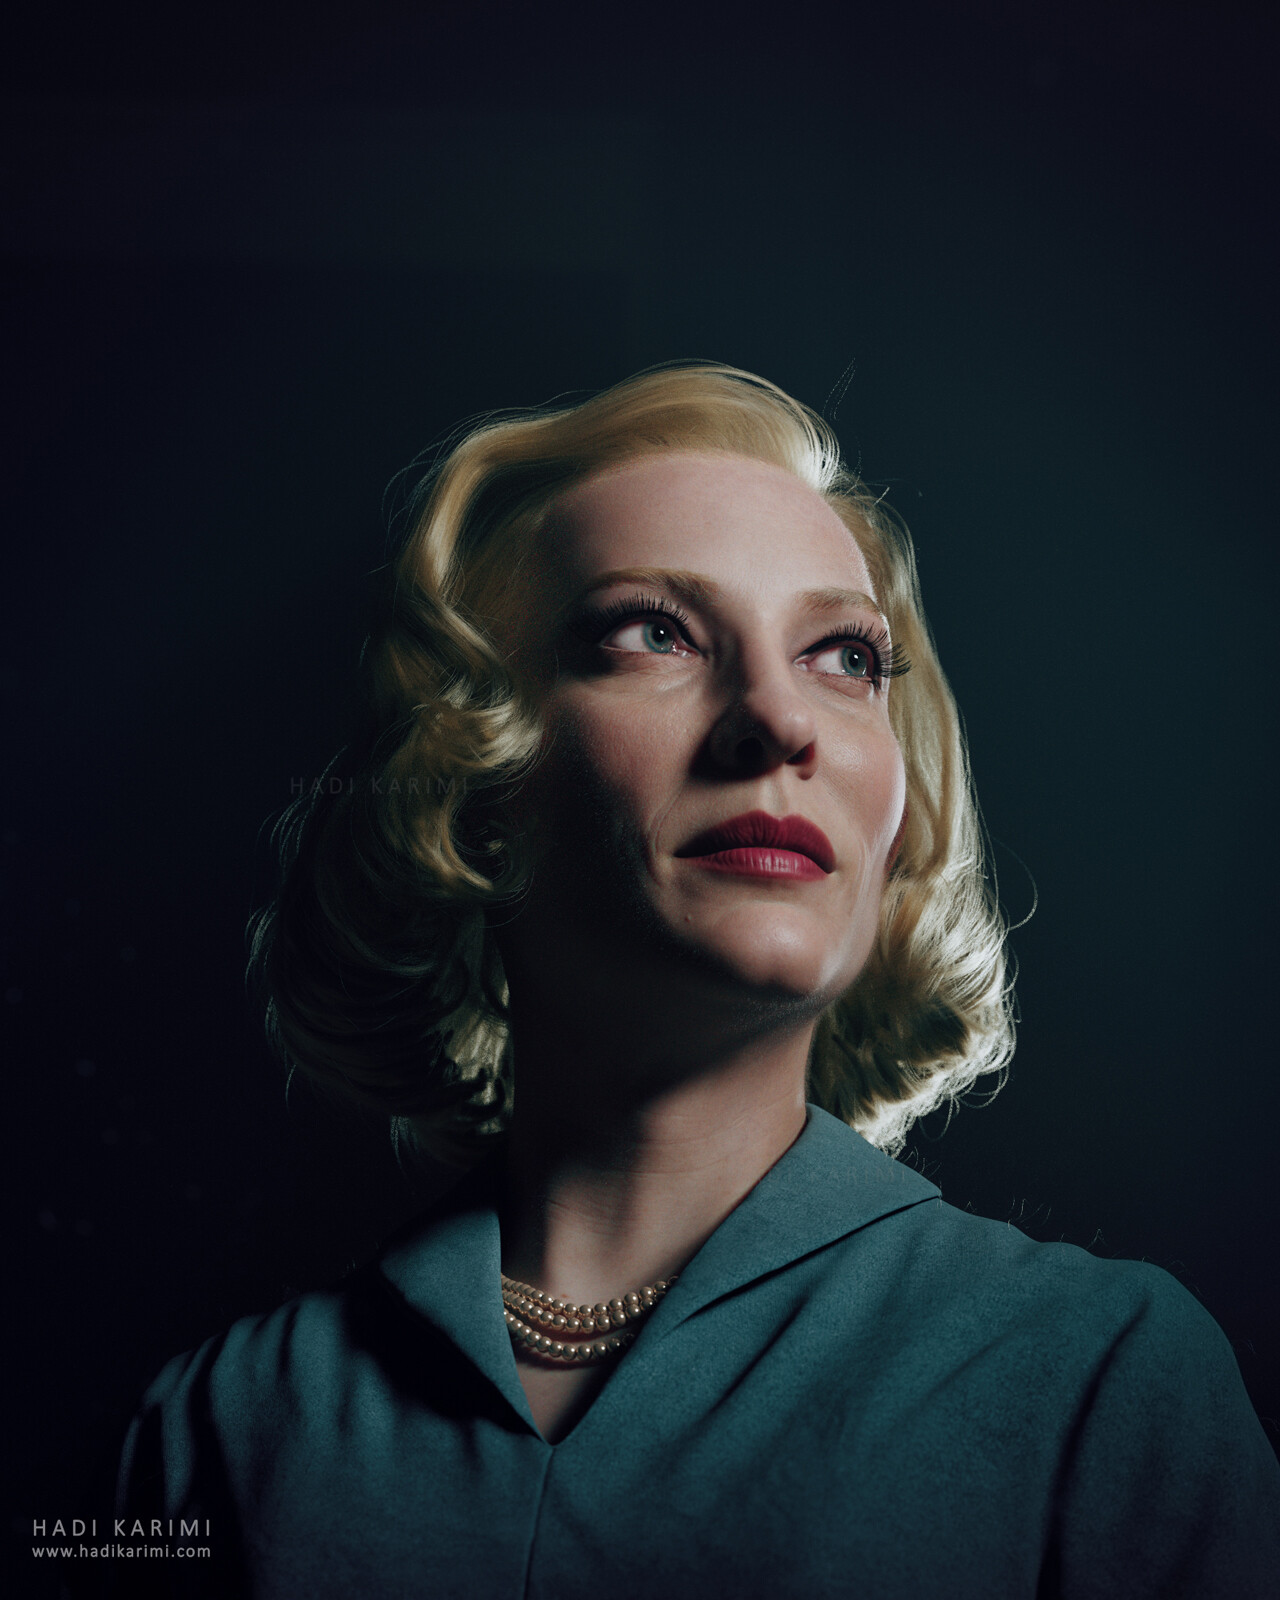 ArtStation - Cate Blanchett (Carol)